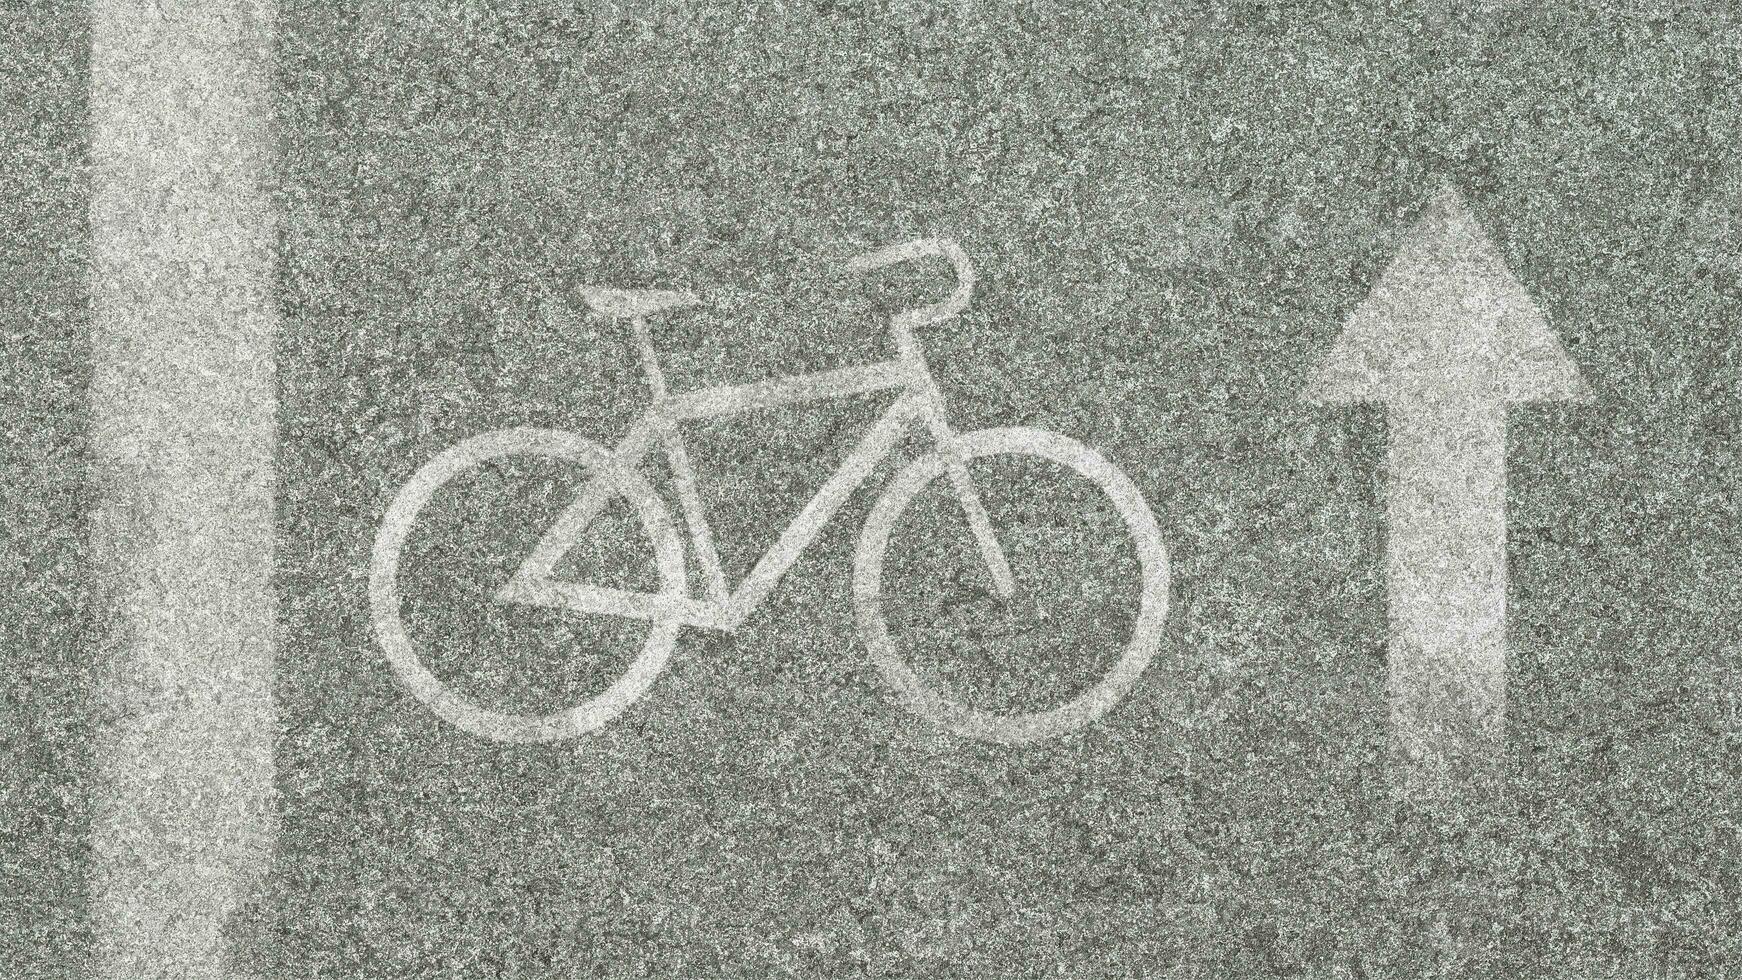 bicicleta pictograma pintado em asfalto. conceito bicicletas pode mover em 3d render foto